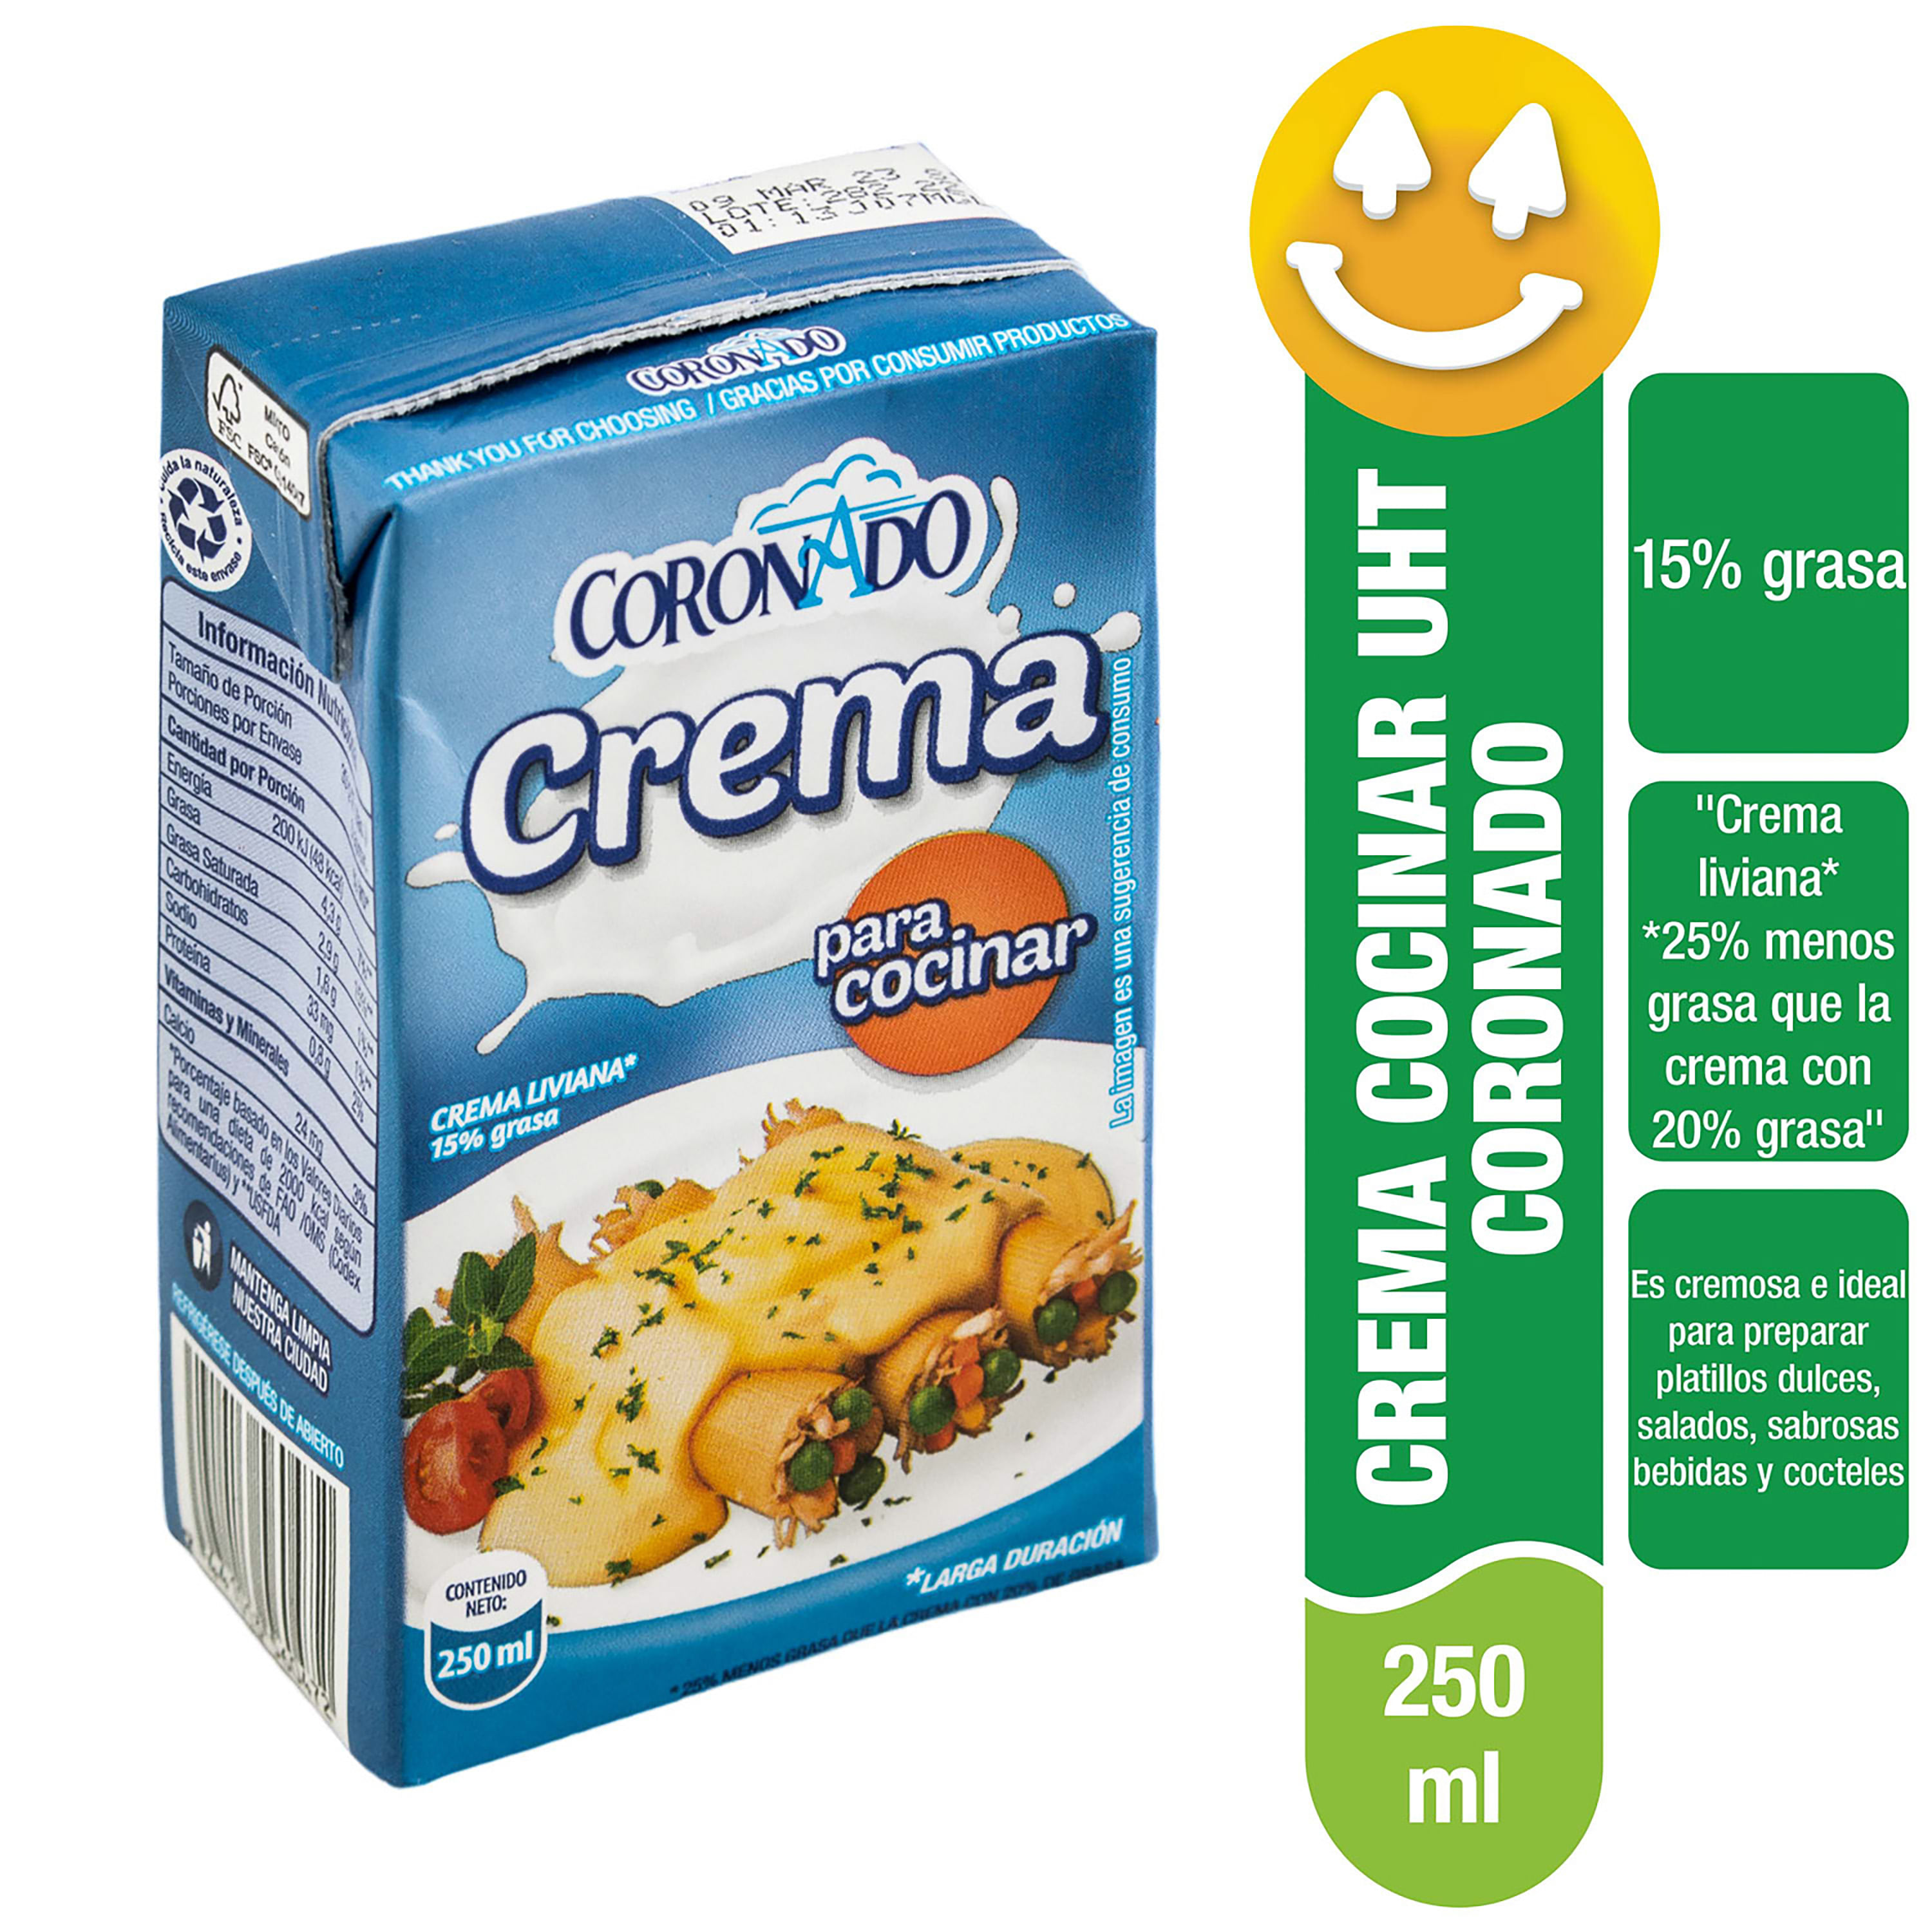 Crema-Liviana-Marca-Coronado-Para-Cocinar-15-Grasa-250ml-1-34833